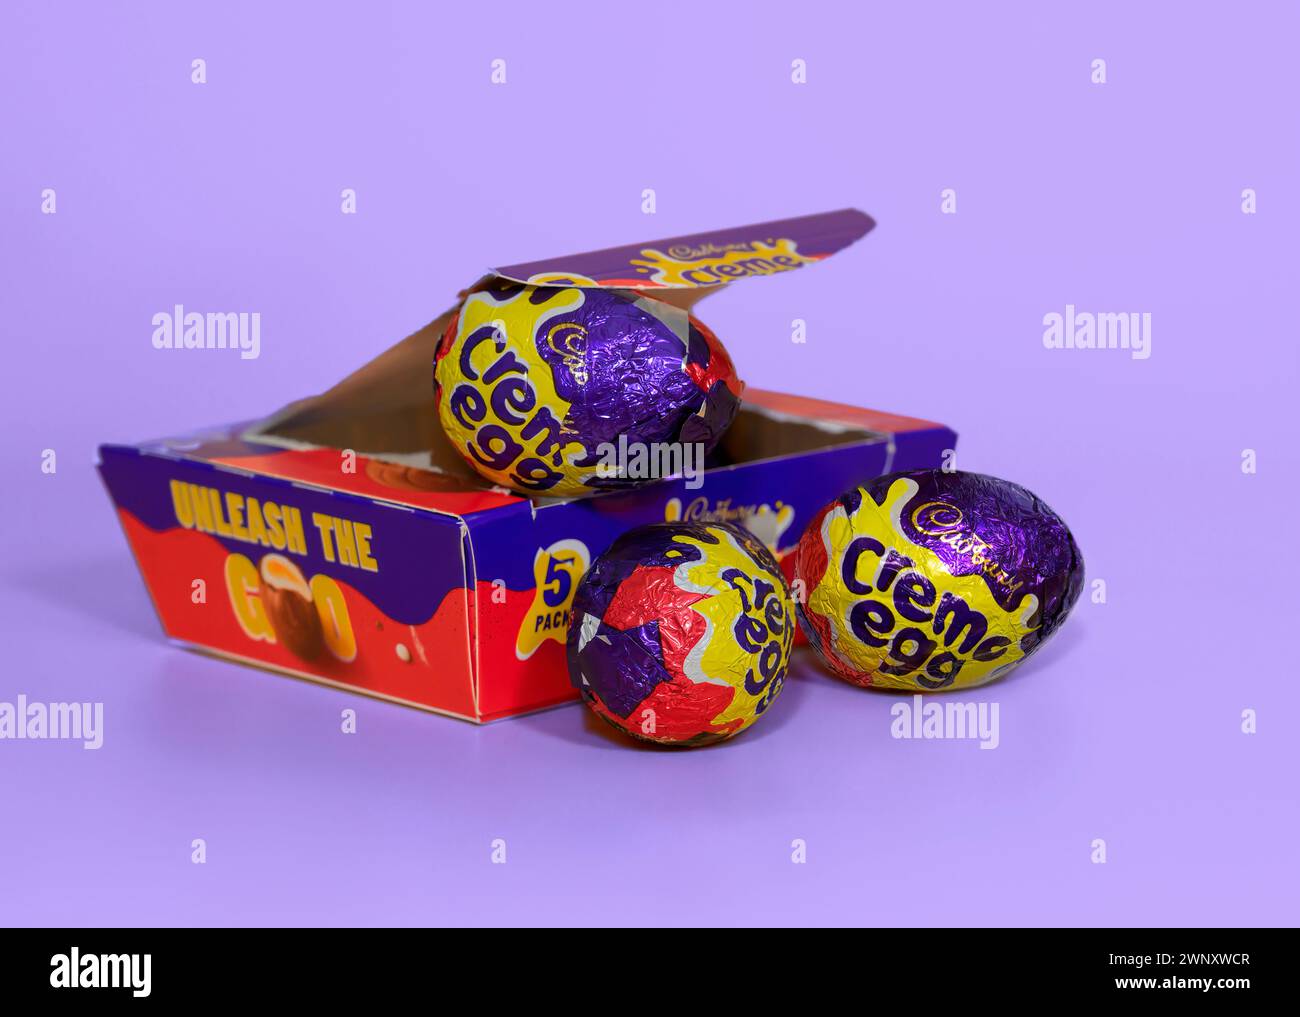 Boîte ouverte d'oeufs Cadbury Creme ouverts sur un fond violet clair avec deux oeufs crème devant Banque D'Images